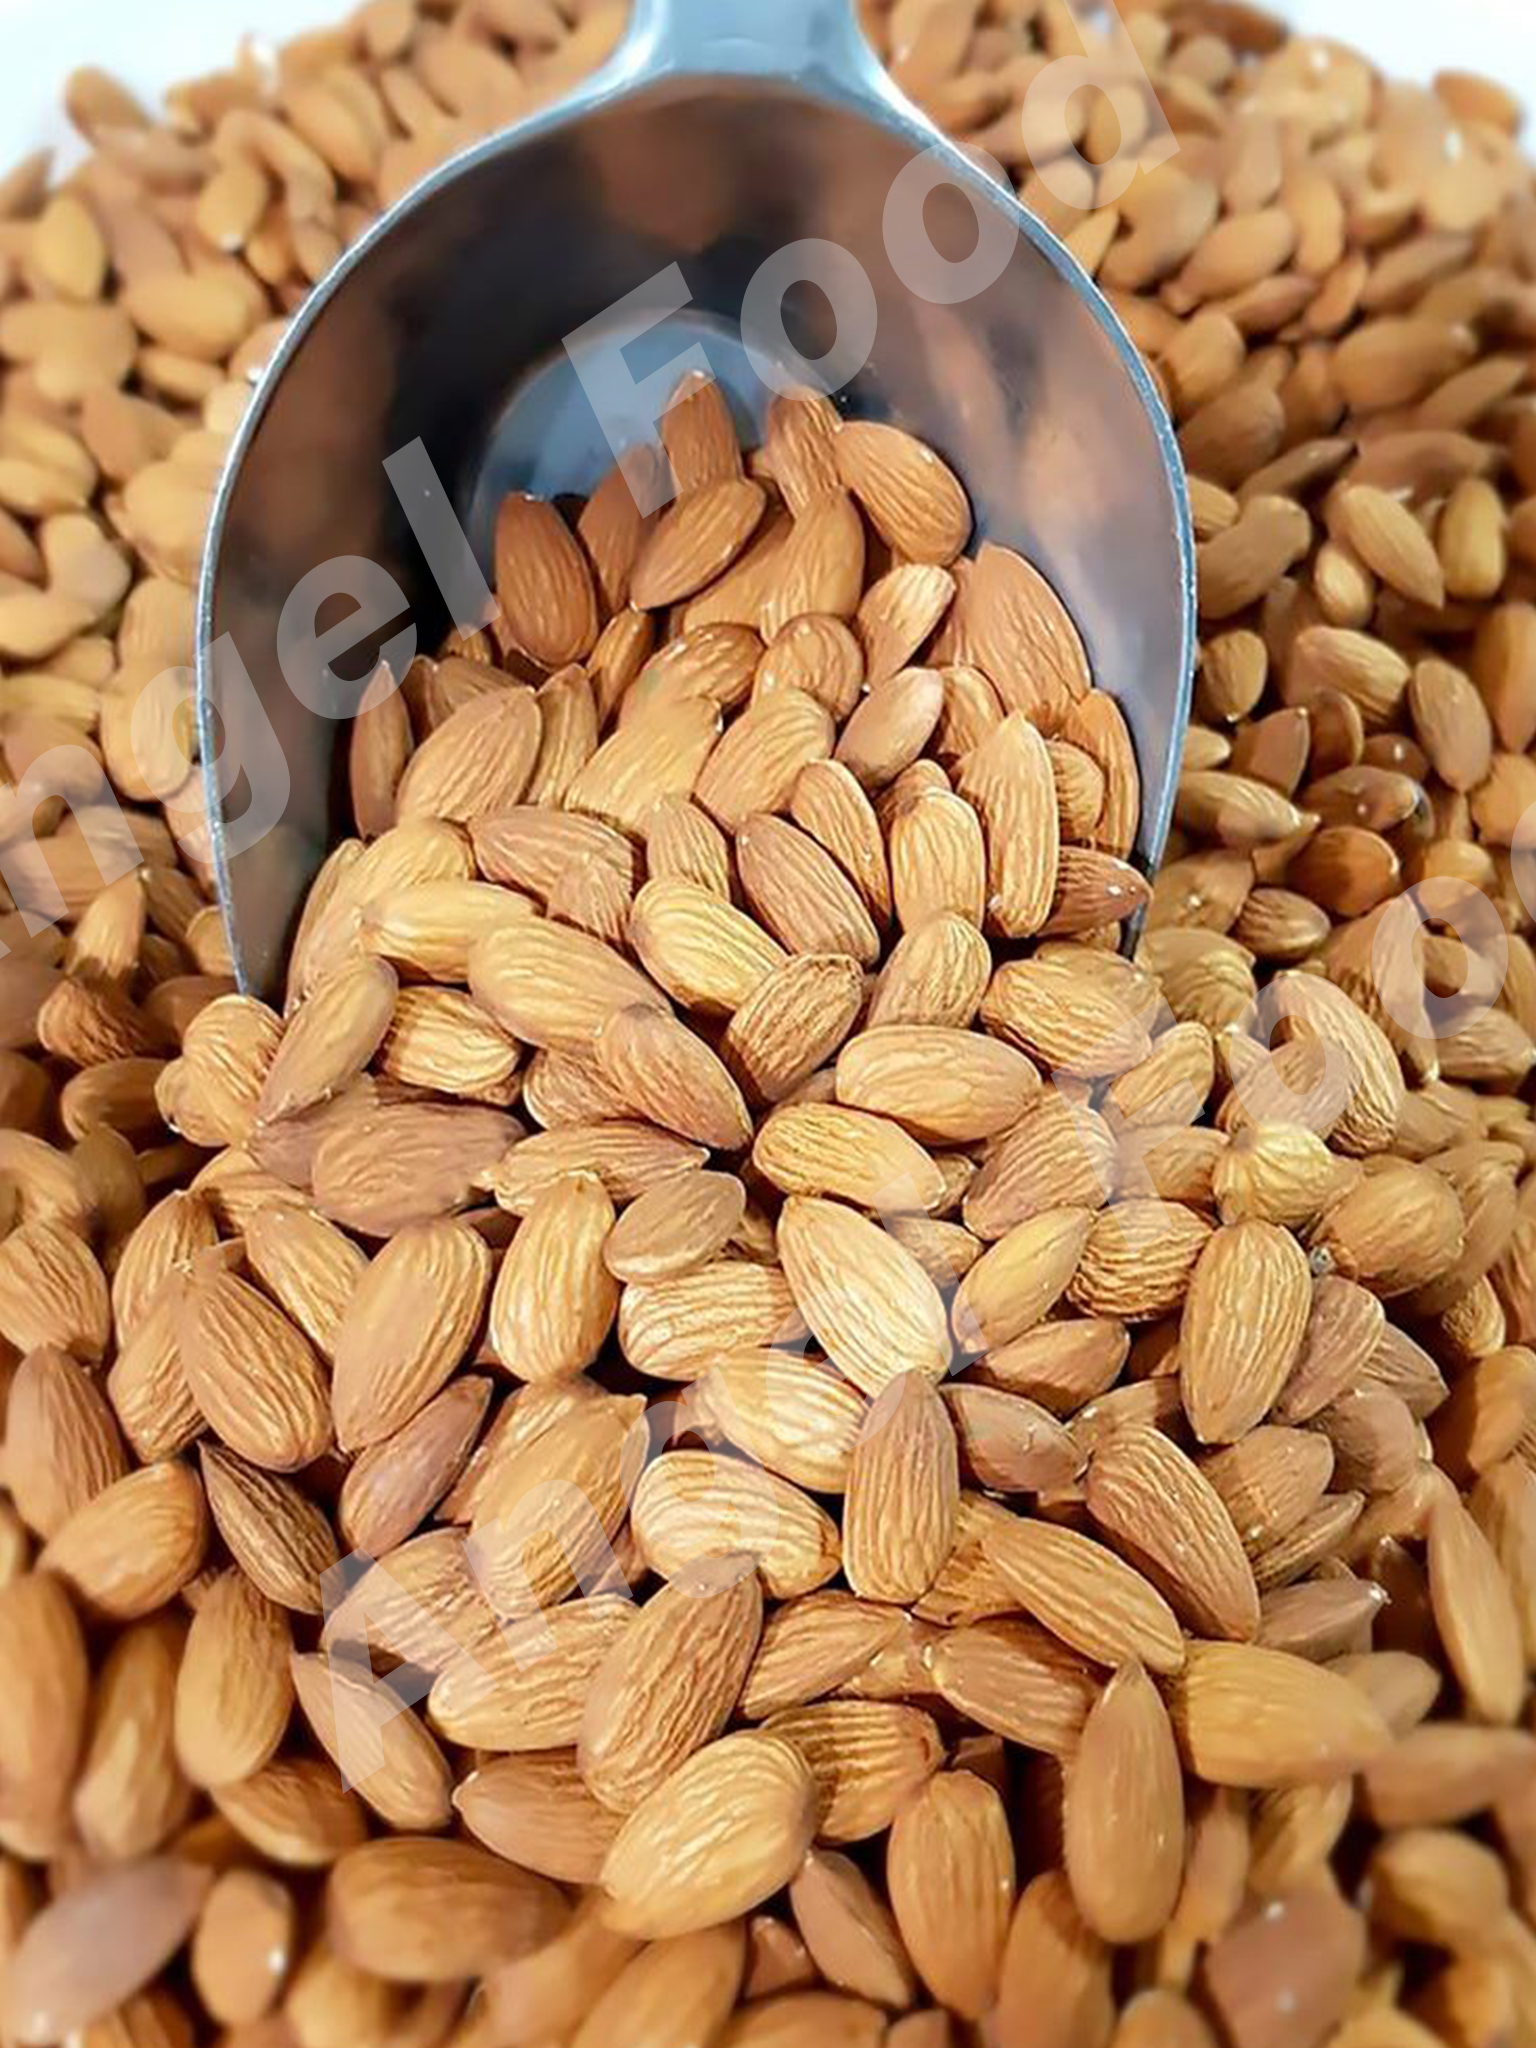 รูปภาพเพิ่มเติมของ อัลมอนด์อบ ธรรมชาติ Natural Roasted Almonds [ขนาด 1,000 กรัม] ไม่ใส่เกลือ พร้อมรับประทาน สดใหม่ กรอบ อร่อย